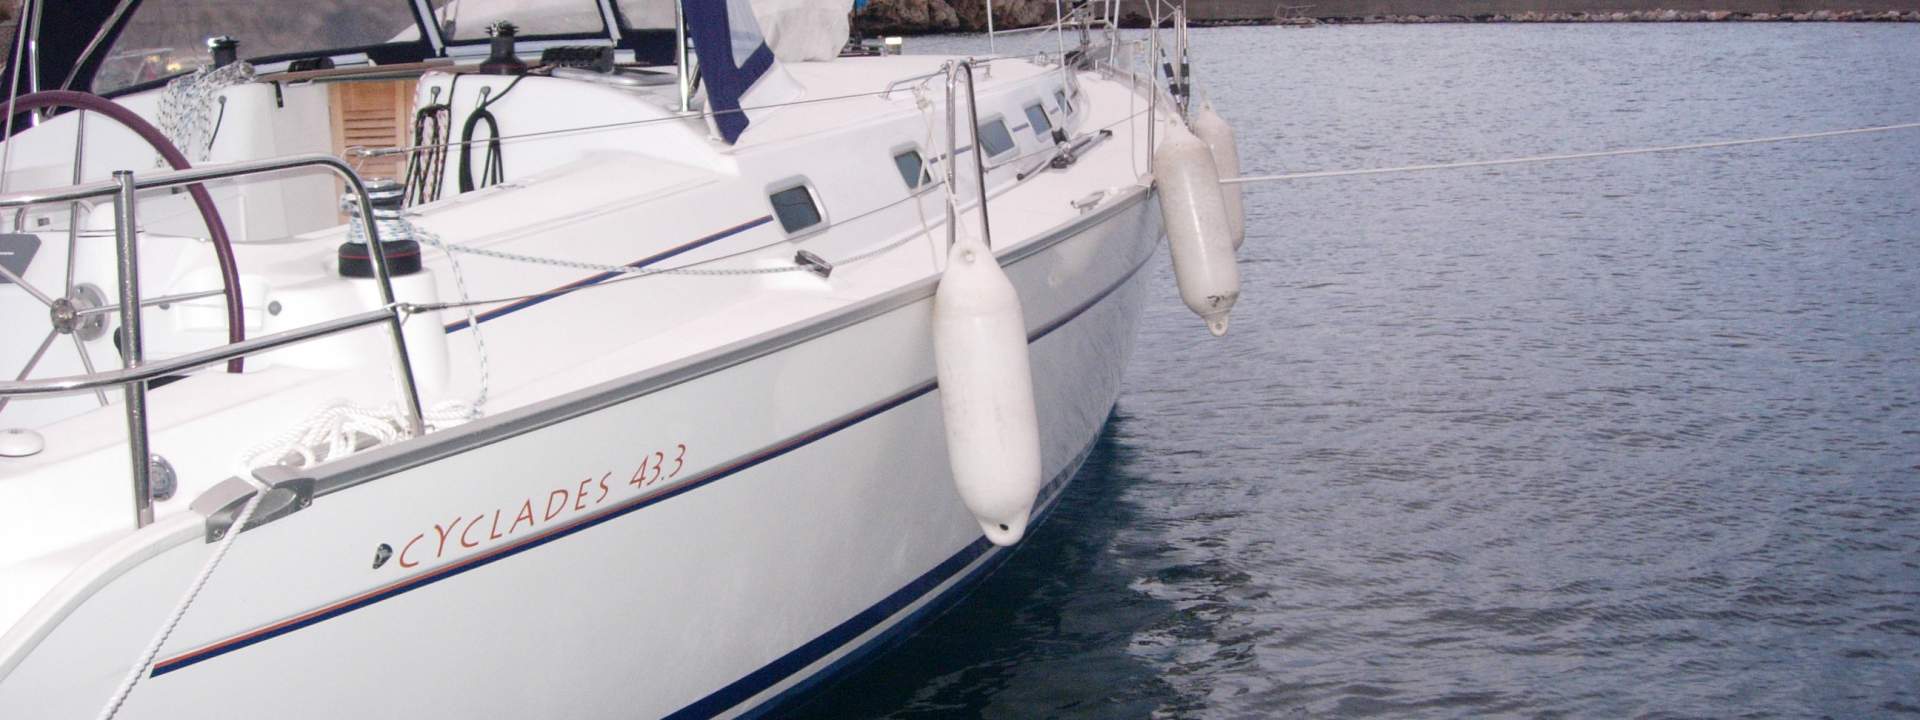 Парусная яхта Cyclades 43.3